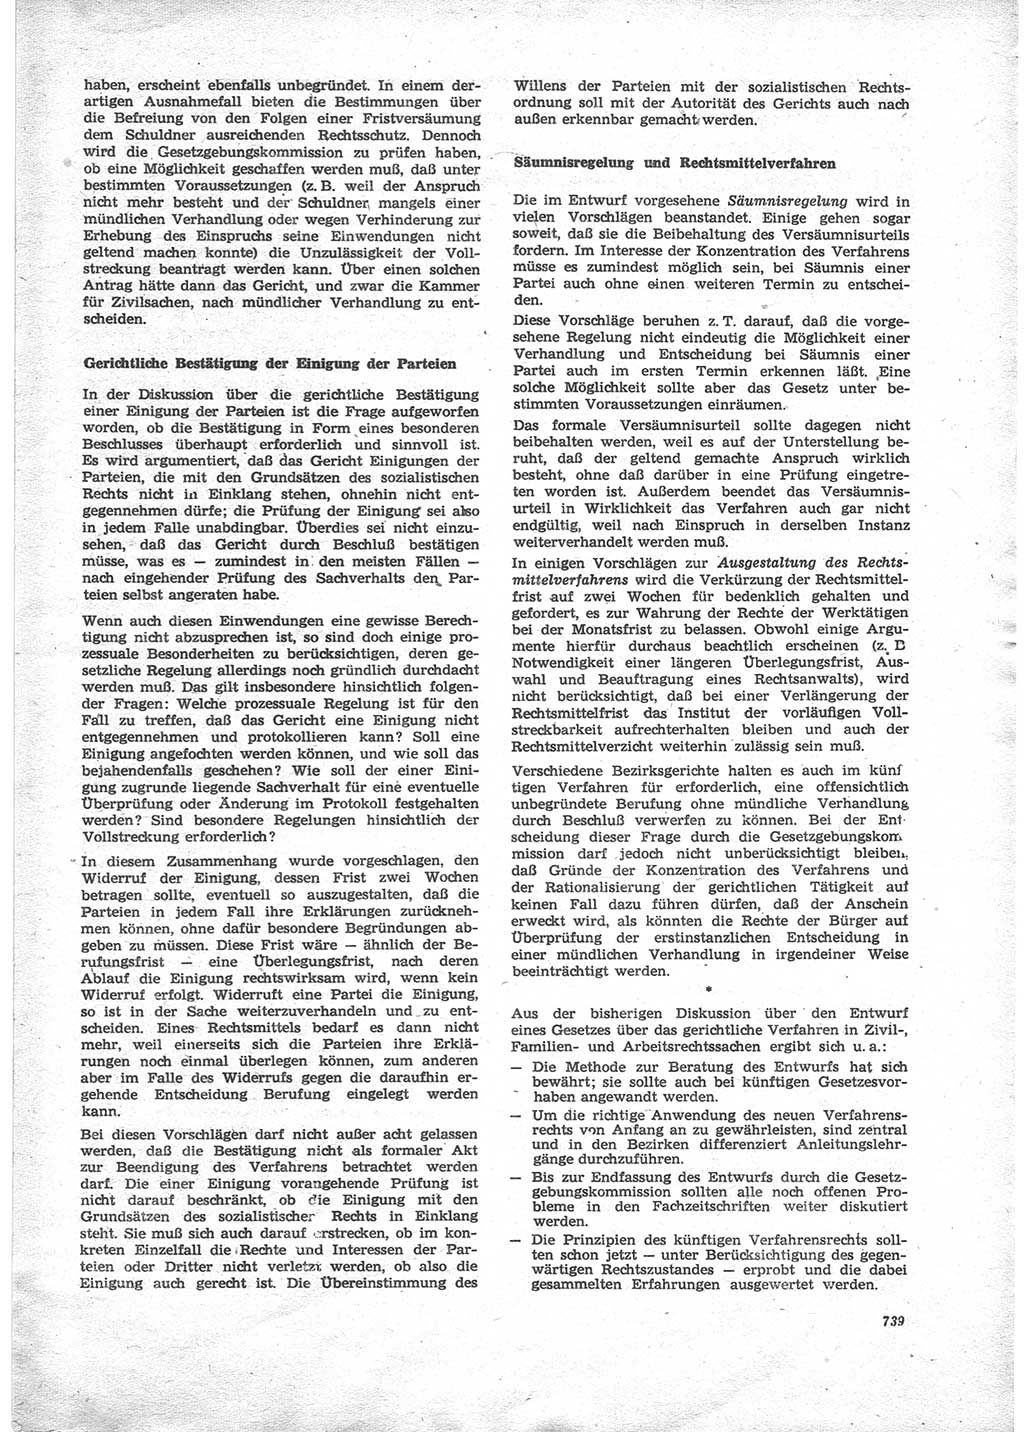 Neue Justiz (NJ), Zeitschrift für Recht und Rechtswissenschaft [Deutsche Demokratische Republik (DDR)], 24. Jahrgang 1970, Seite 739 (NJ DDR 1970, S. 739)